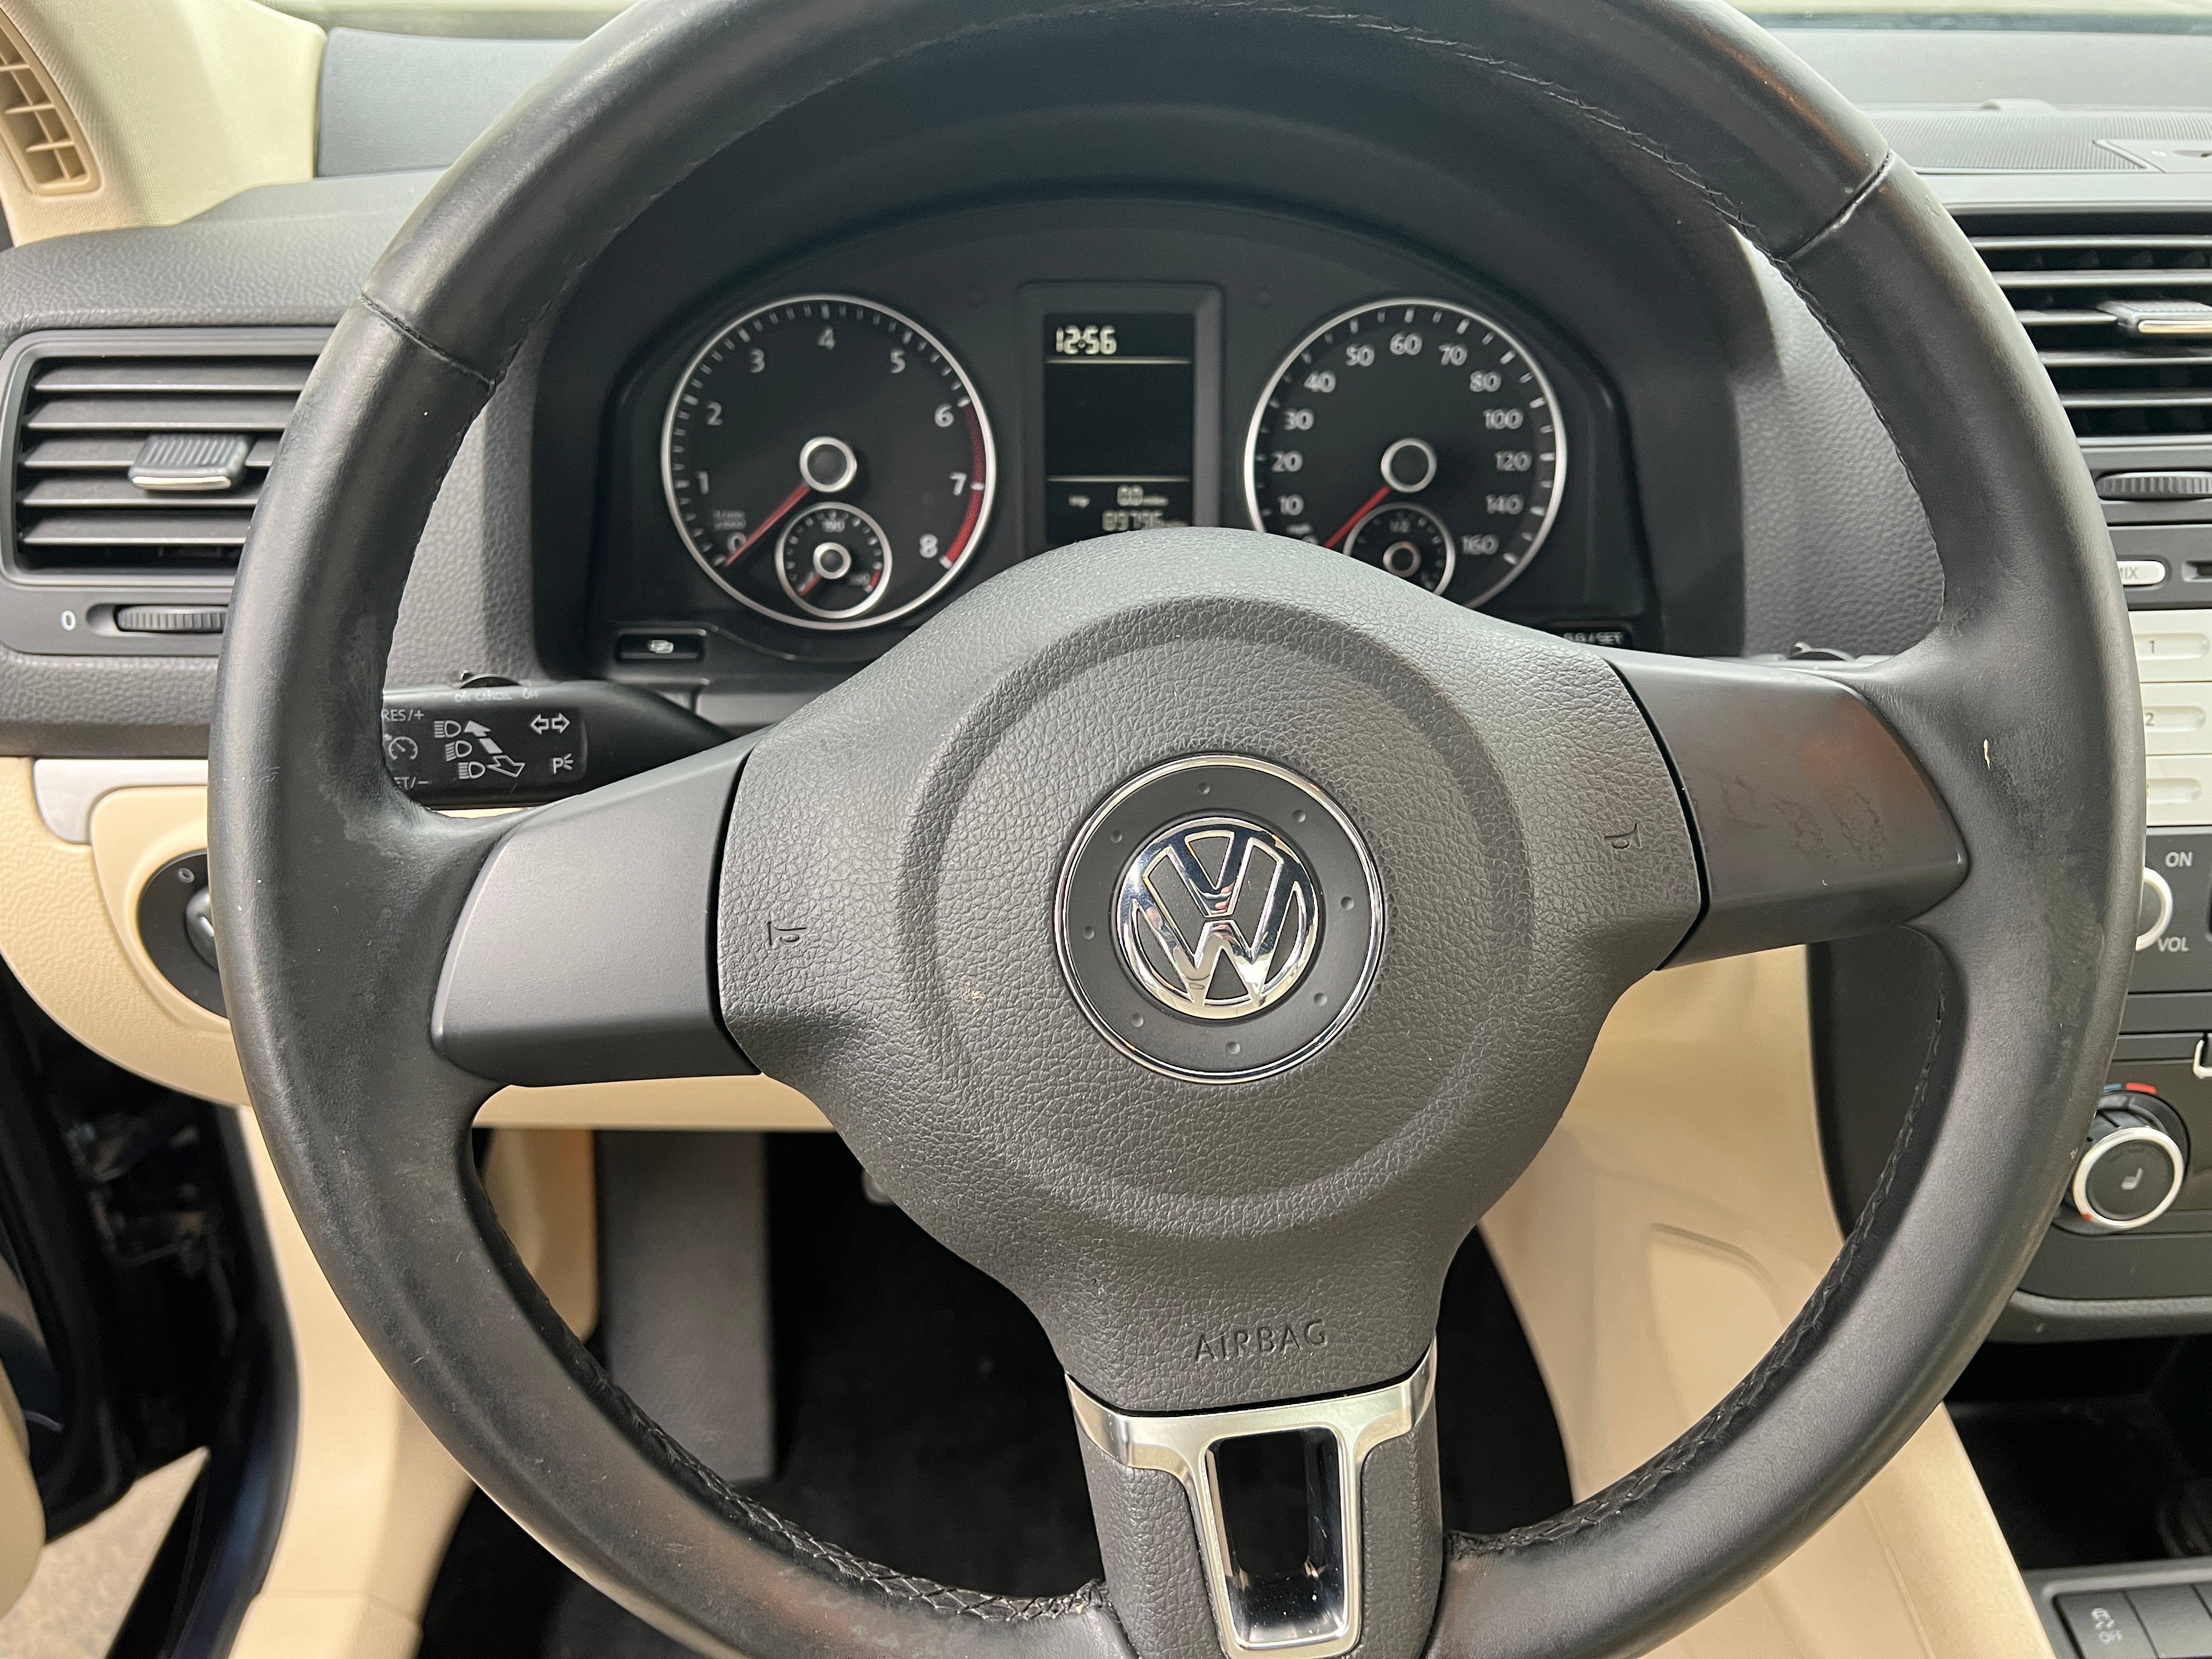 2010 Volkswagen Jetta Limited Edition 5